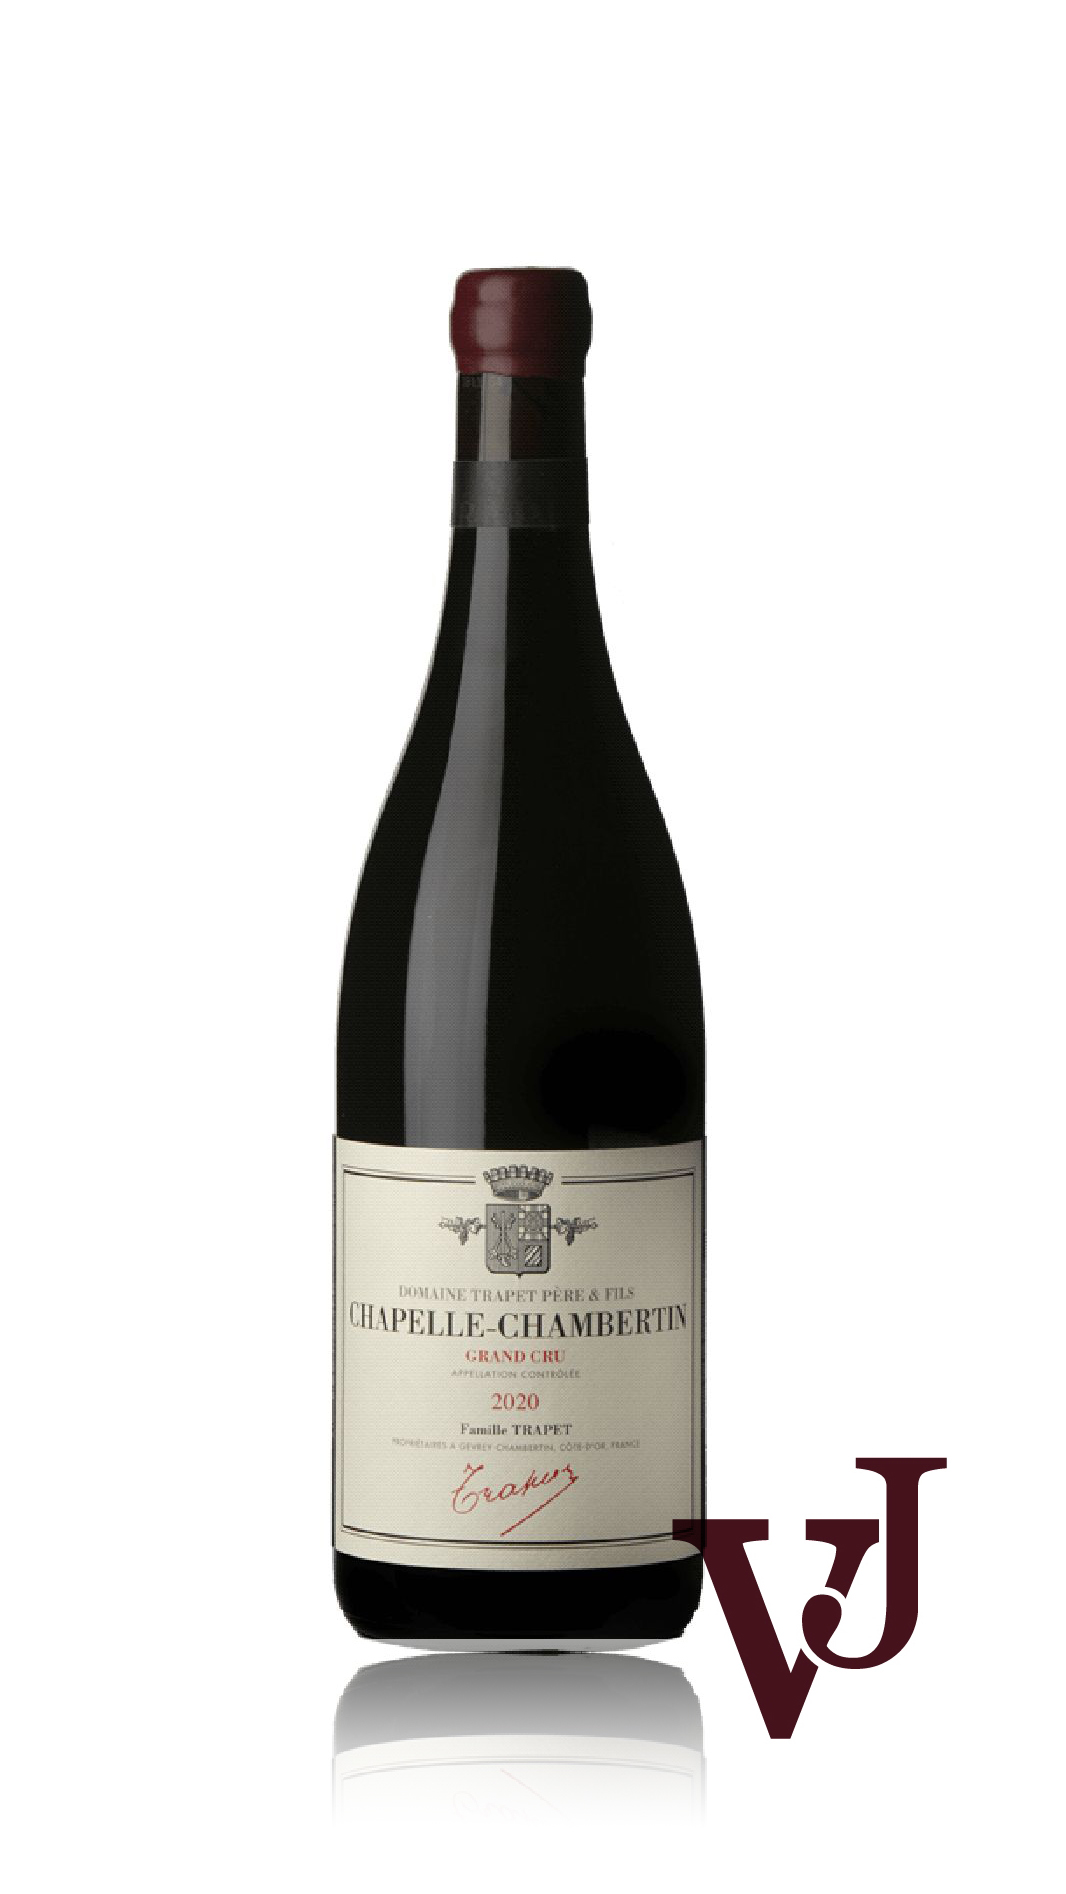 Rött Vin - Chapelle-Chambertin Grand Cru Domaine Trapet 2020 artikel nummer 9217201 från producenten Domaine Trapet från området Frankrike